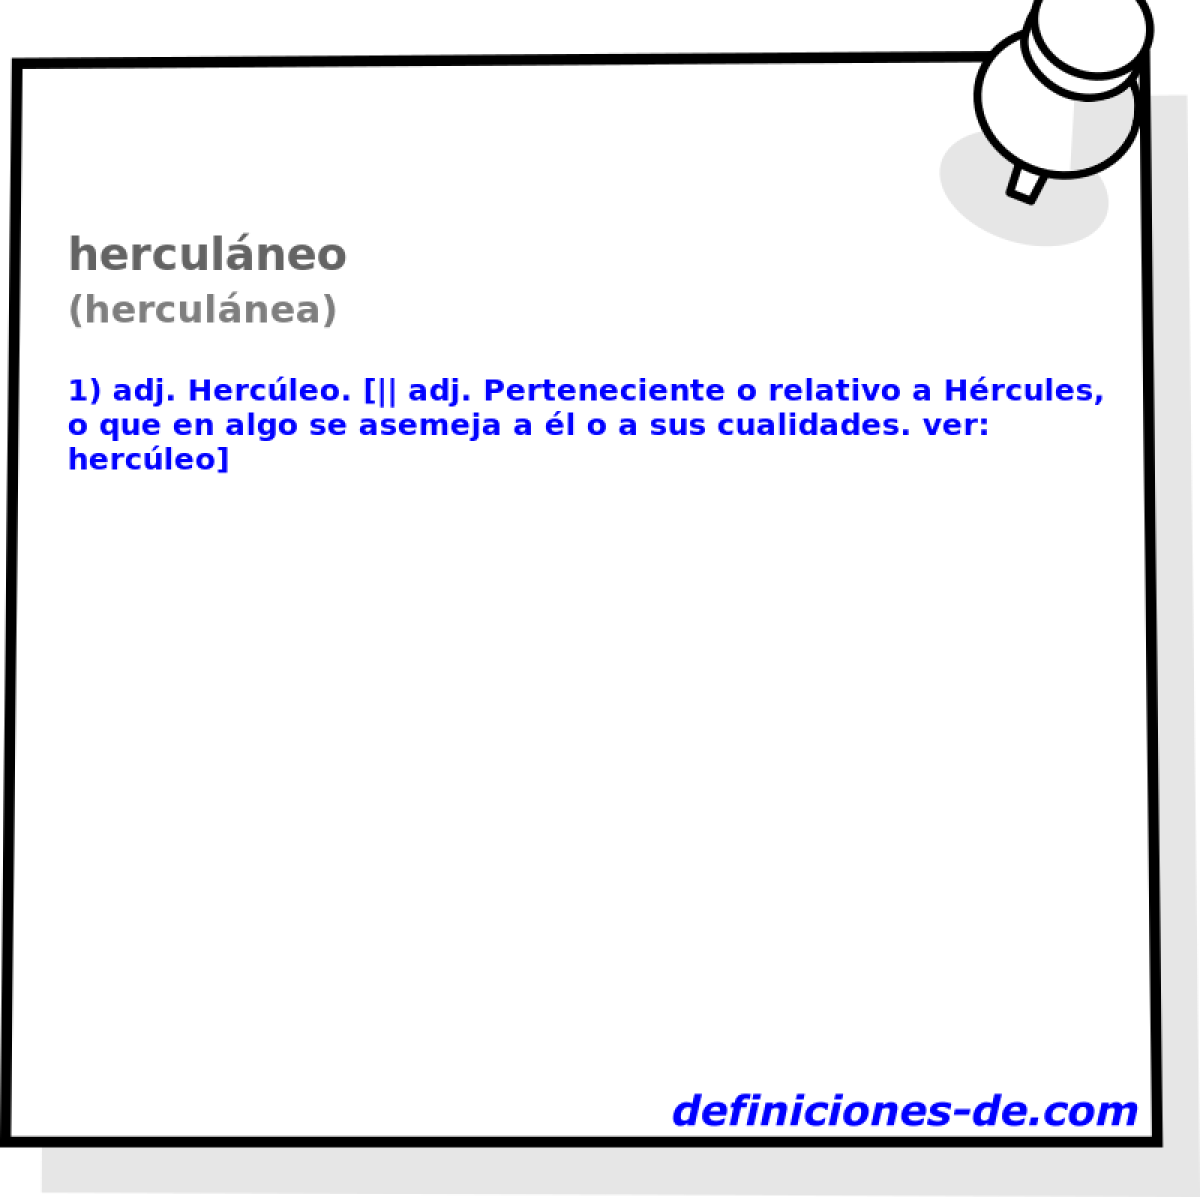 herculneo (herculnea)